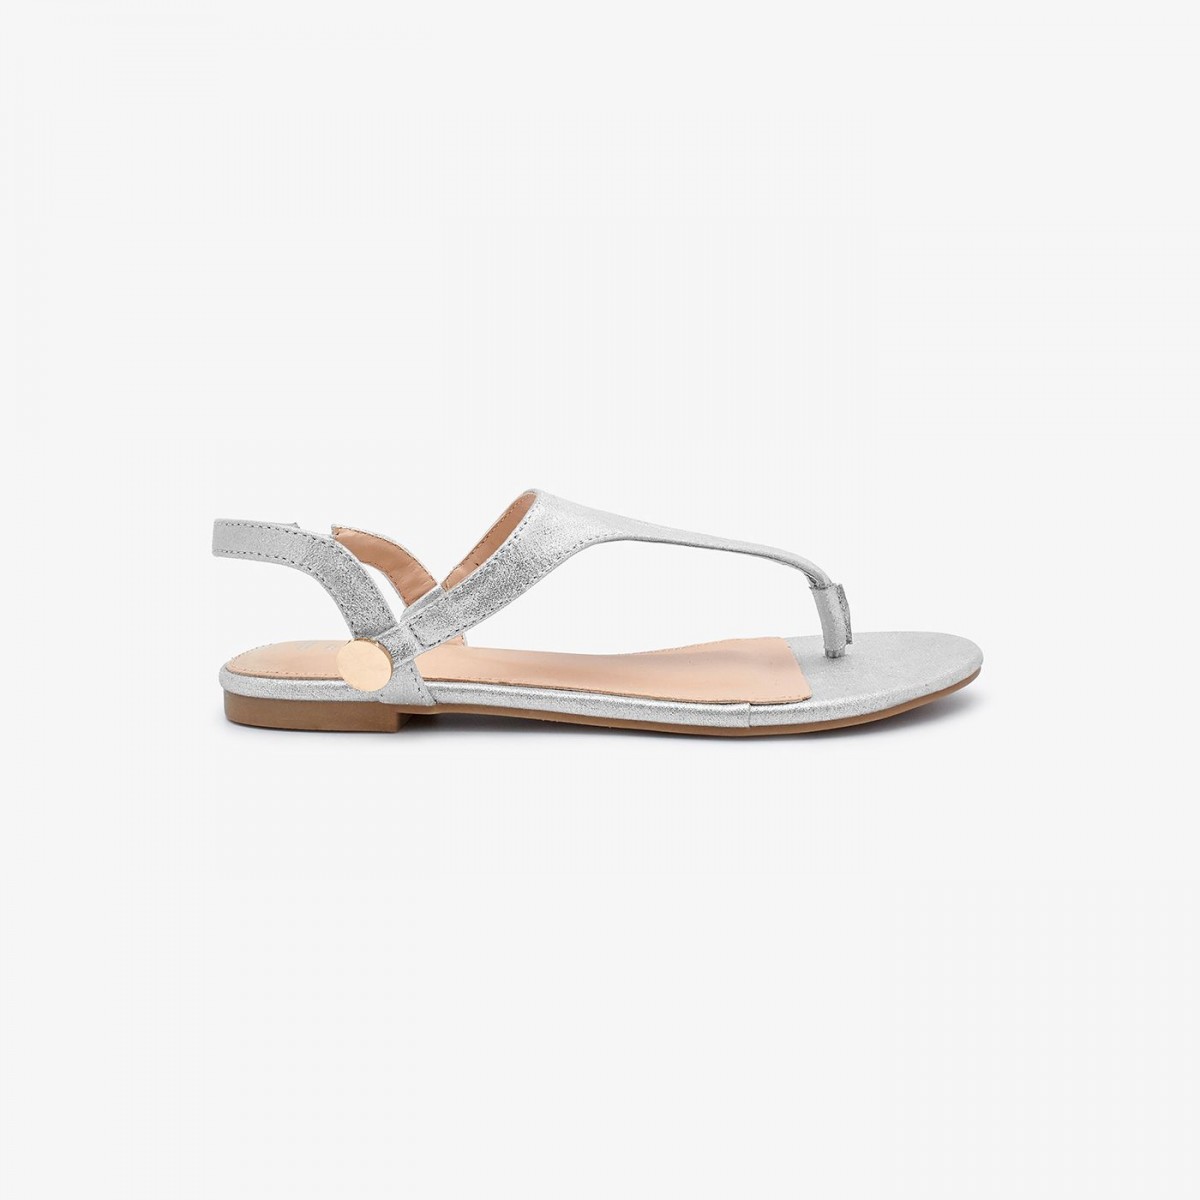 /2019/08/reeva-classic-ladies-sandal-rv-sd-0476-silver-image2.jpeg